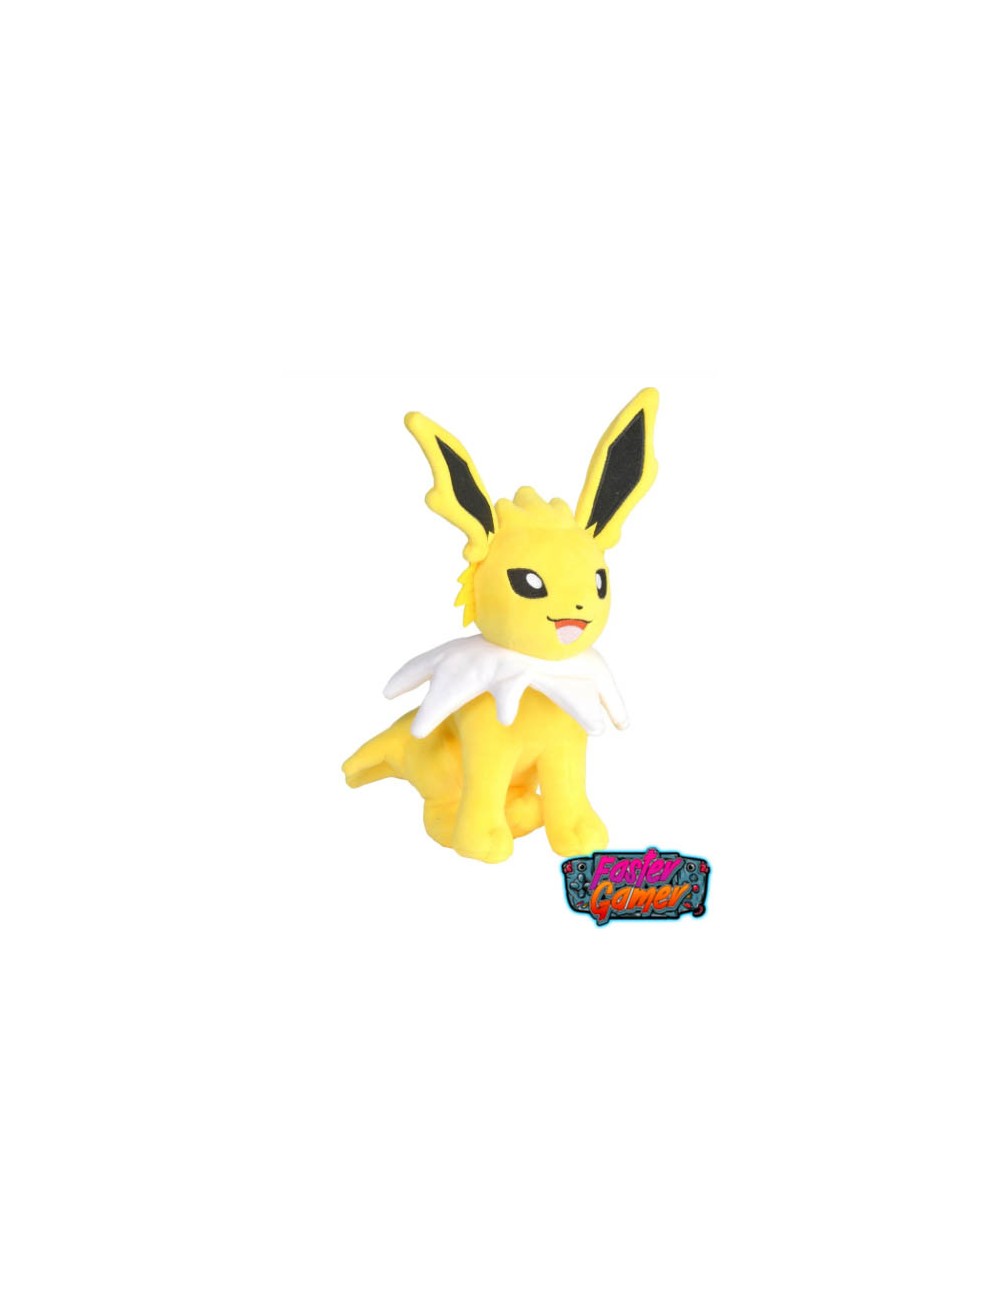 Évoli Peluche Pokémon 20cm - Pokemon